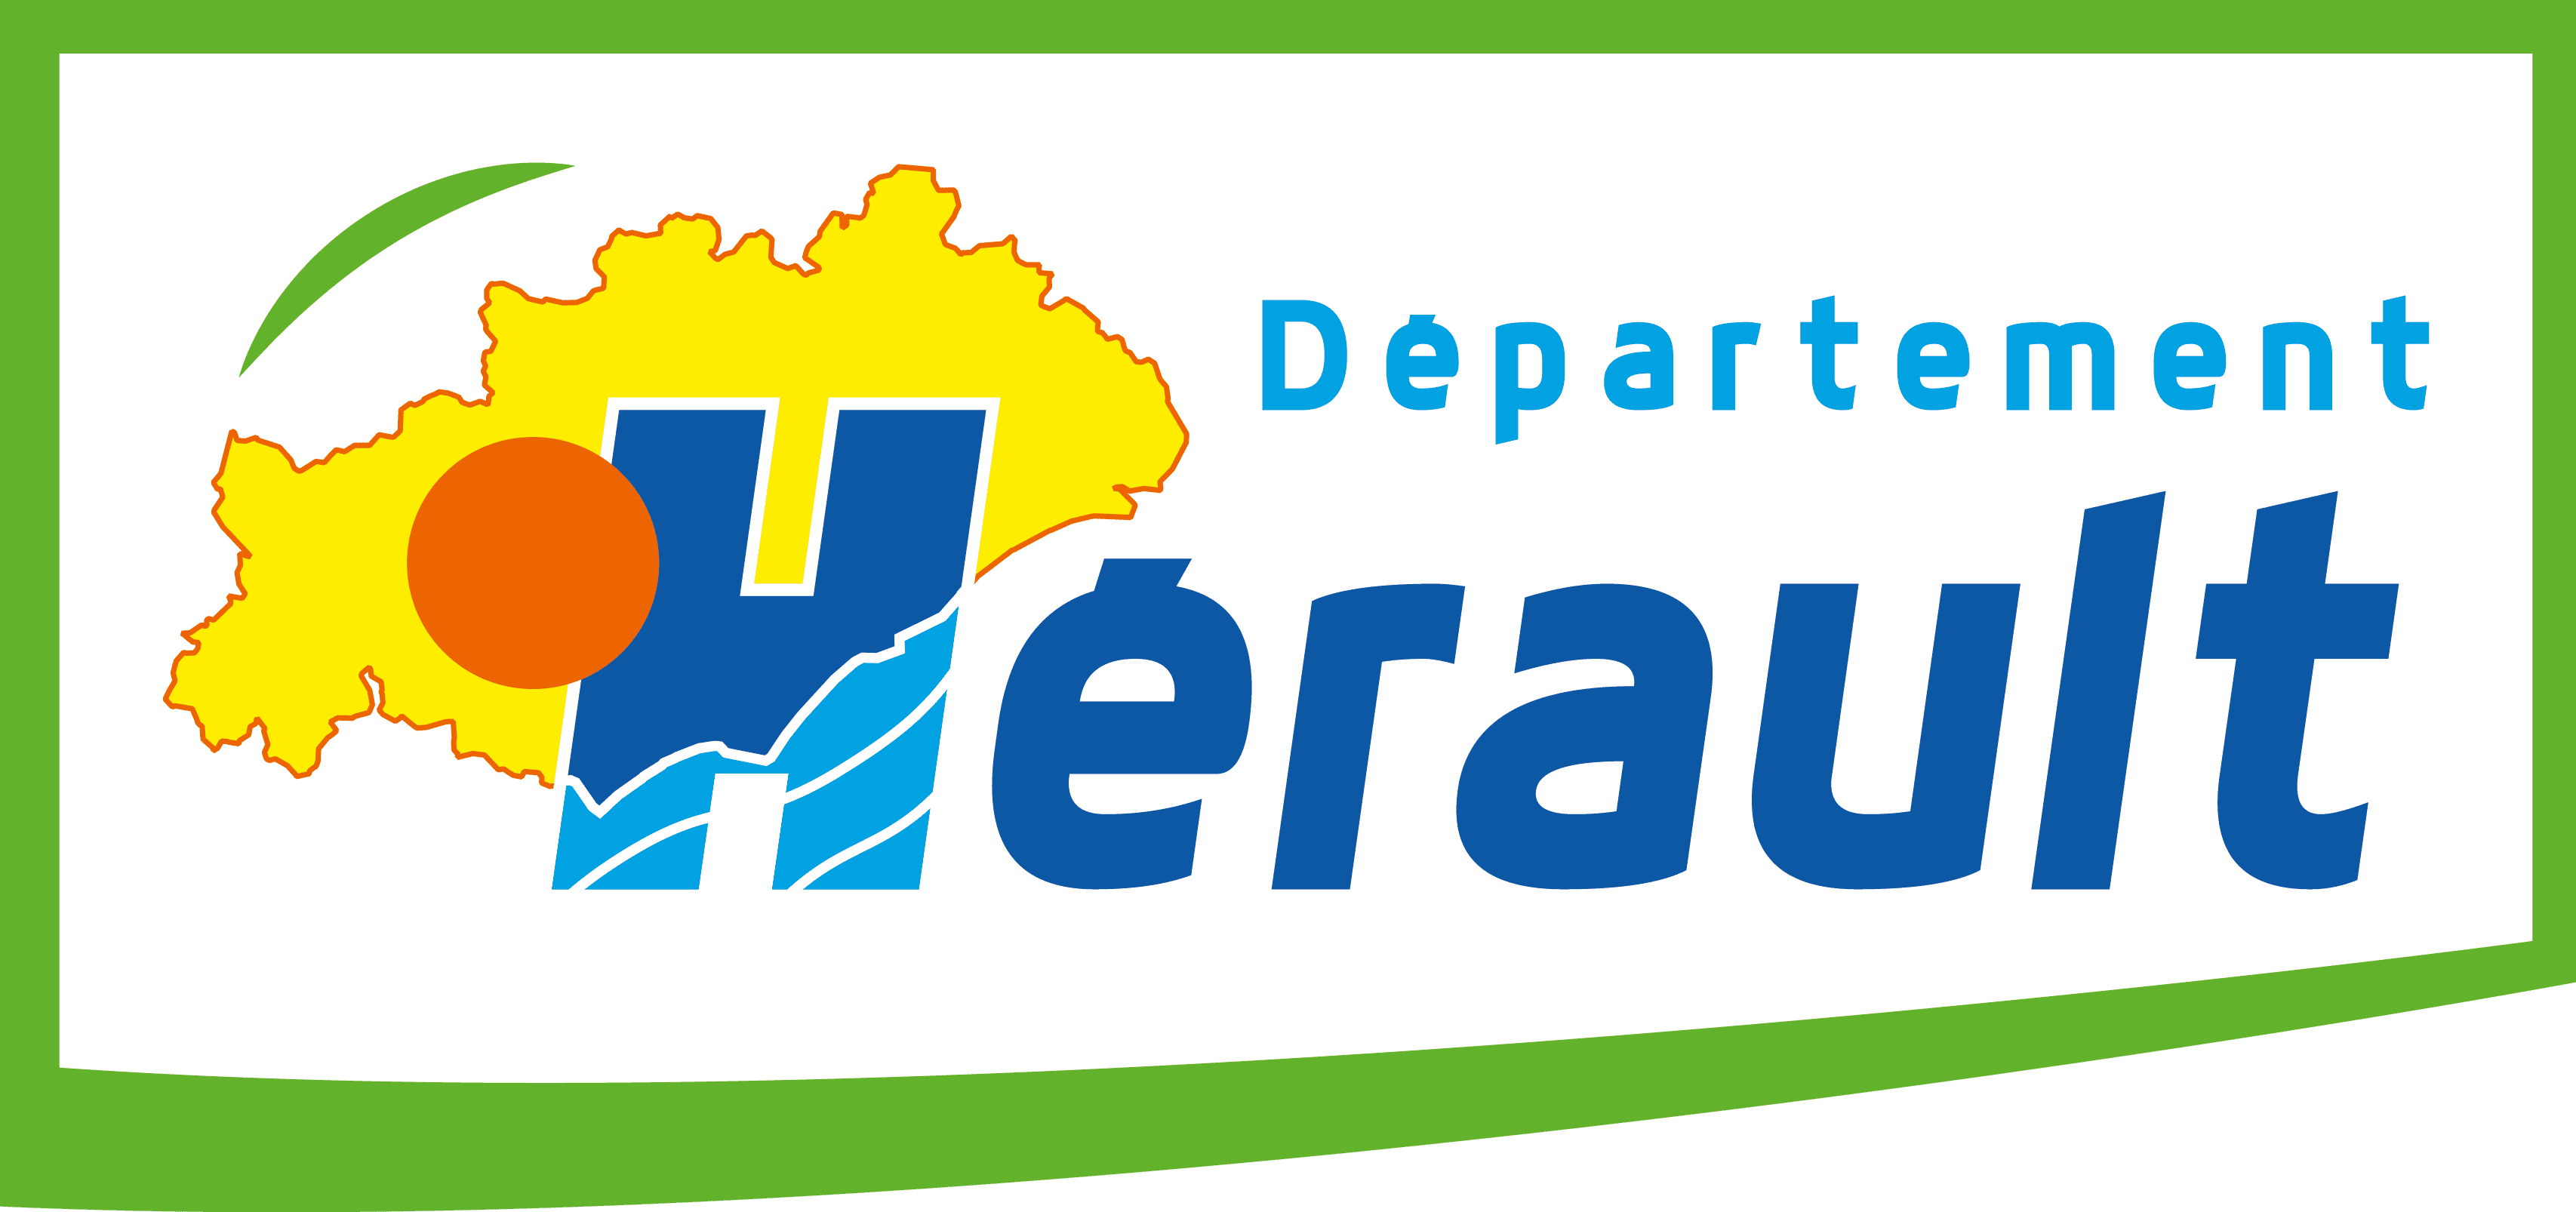 Département Hérault